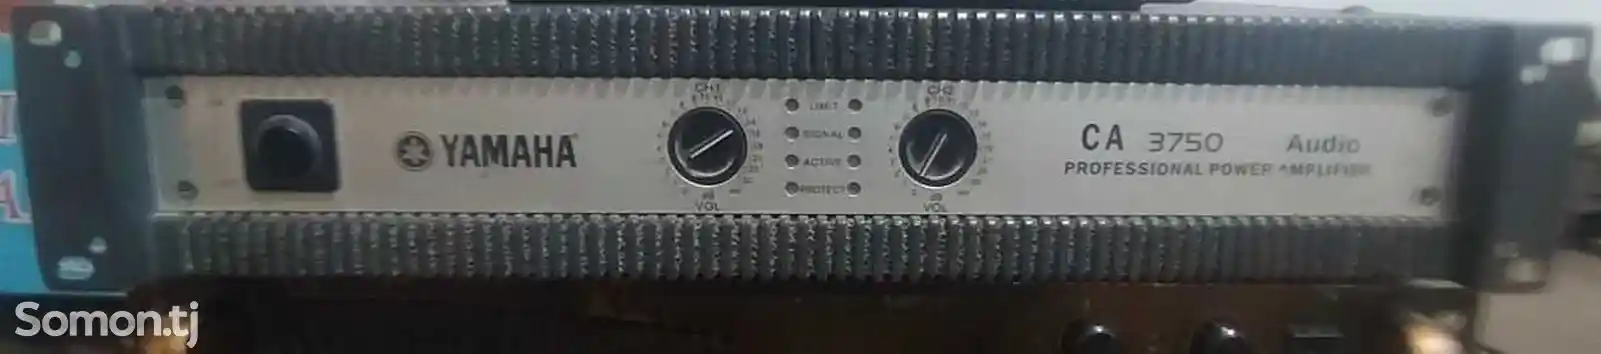 Музыкальное оборудование Yamaha CA3750-1